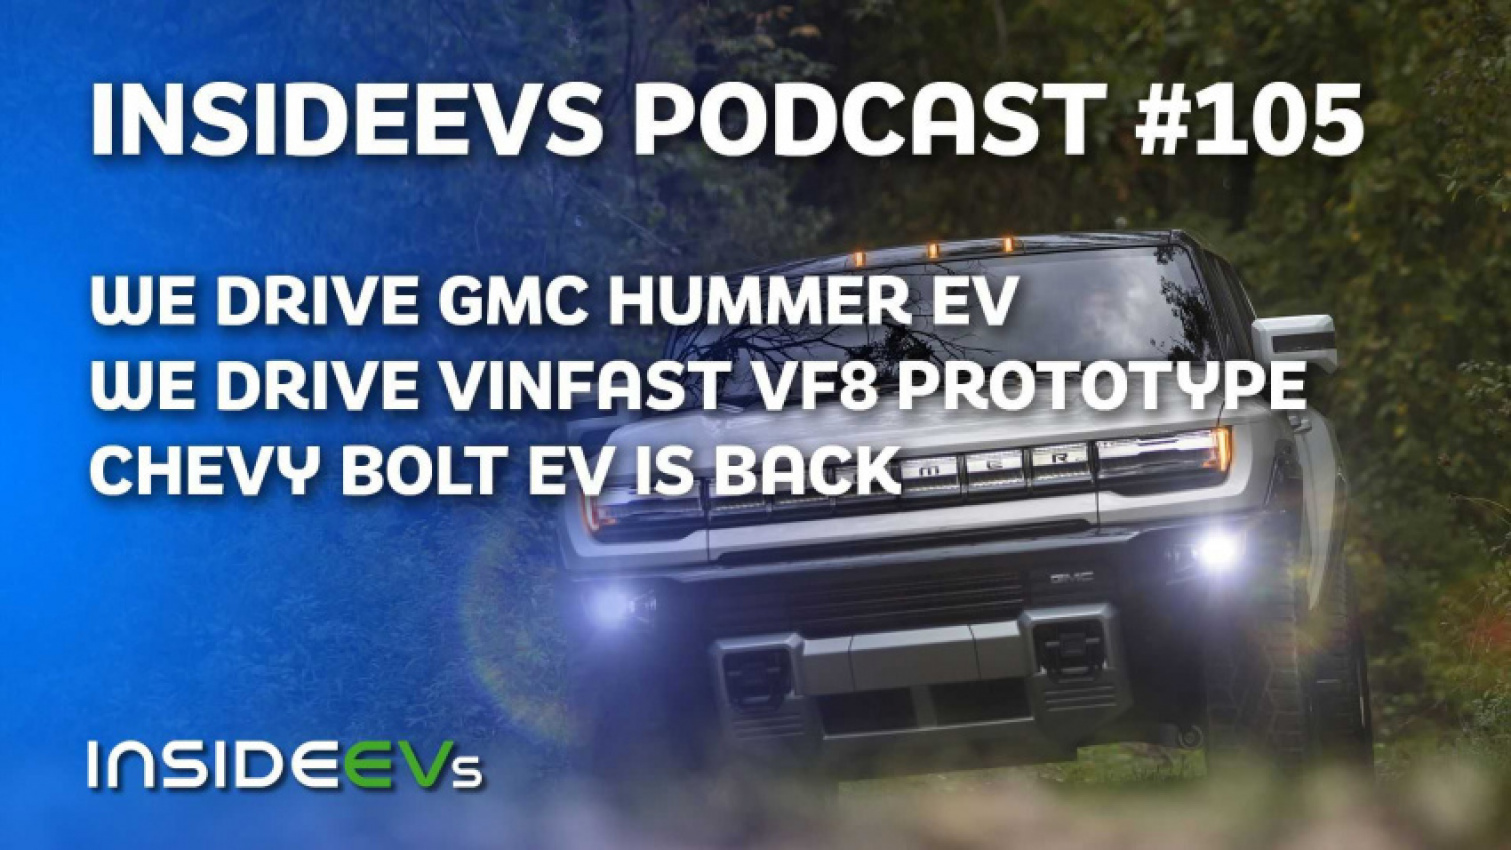 autos, cars, evs, gmc, hummer, vinfast, we drive gmc hummer ev and vinfast vf8 pre-production